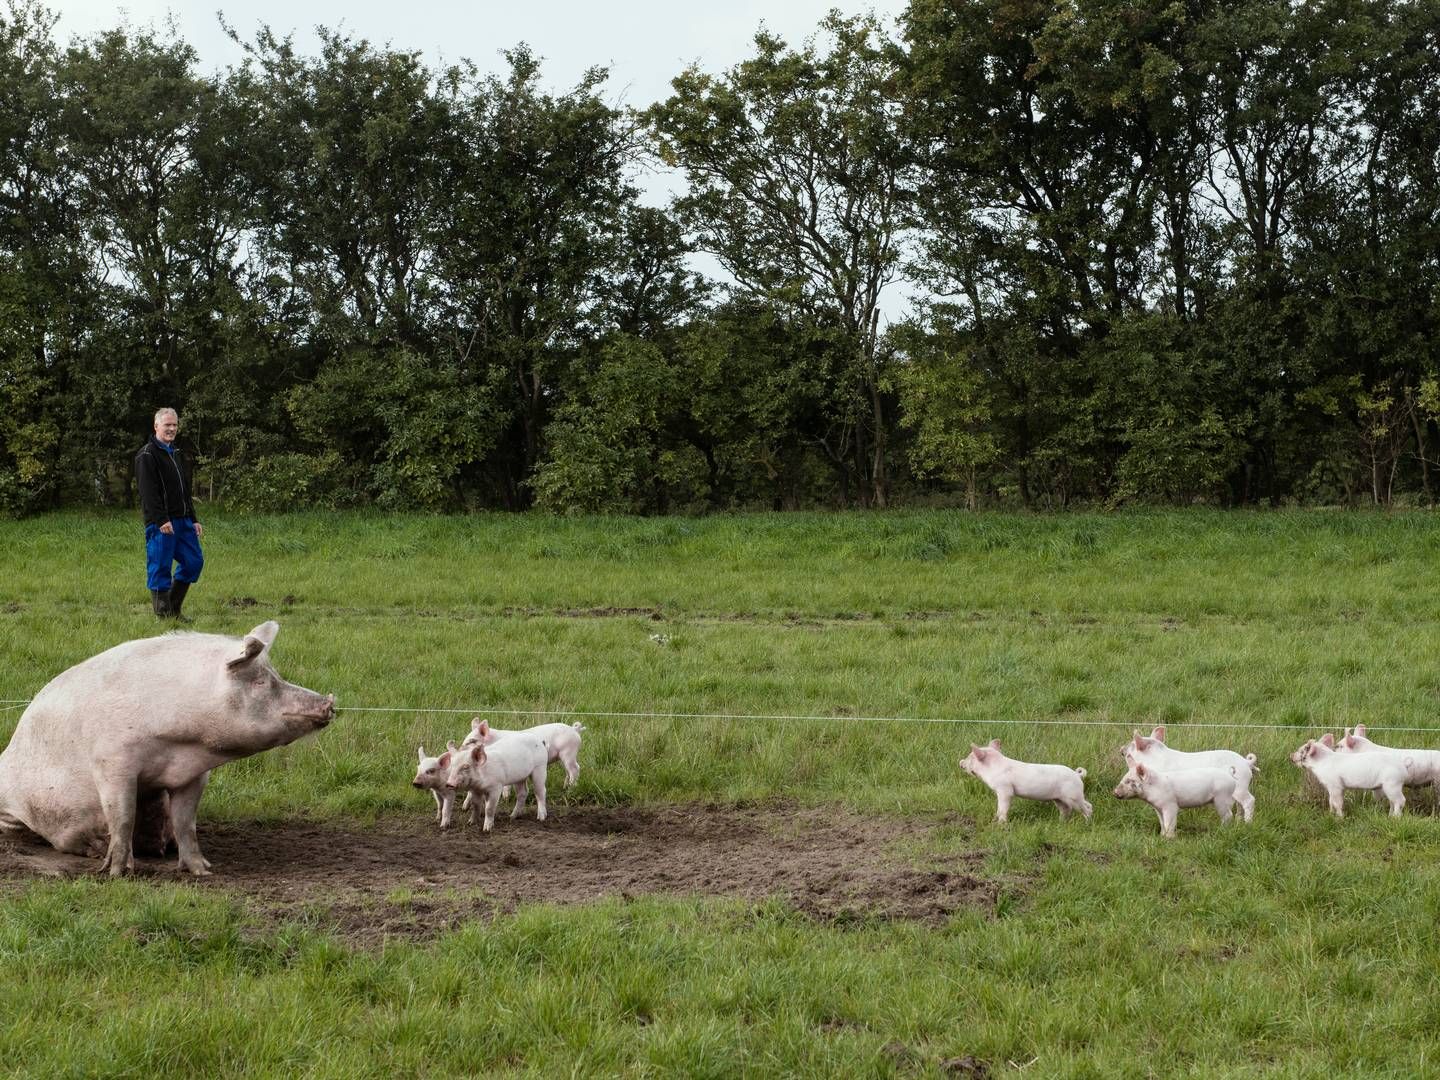 Salget af økologisk grisekød faldt sidste år med 27 pct. sammenlignet med året før. Arkivfoto. | Foto: Morten Lau-nielsen